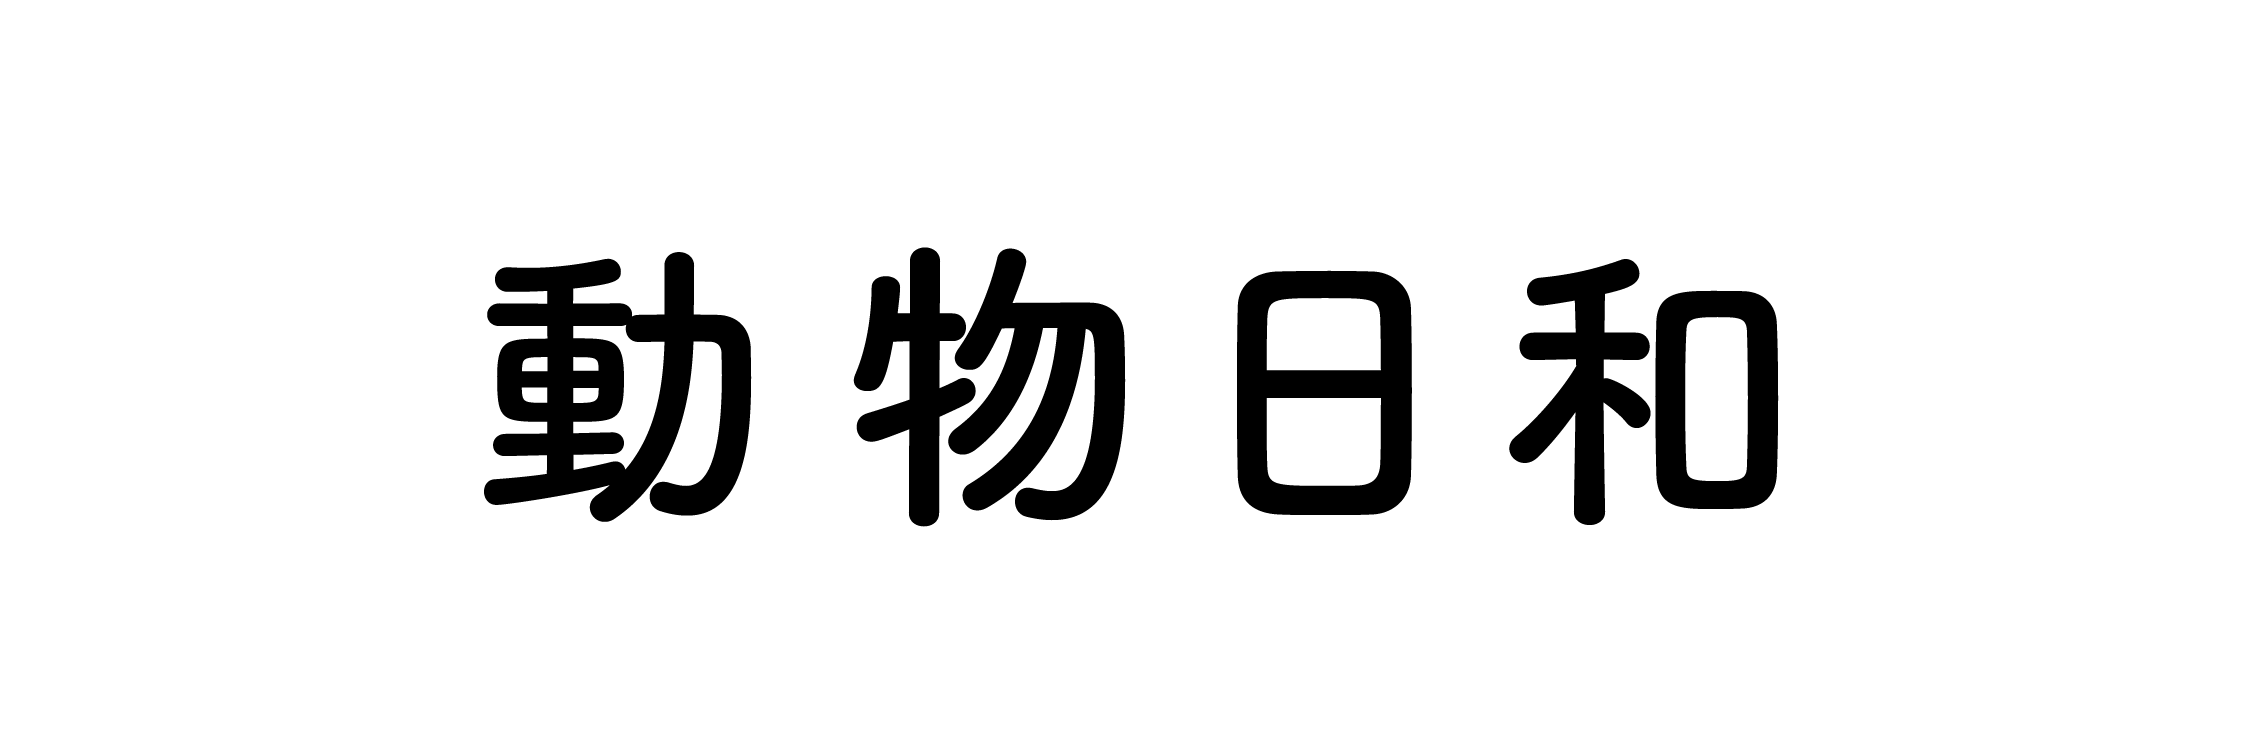 動物日和(動物園水族館情報サイト)ロゴ